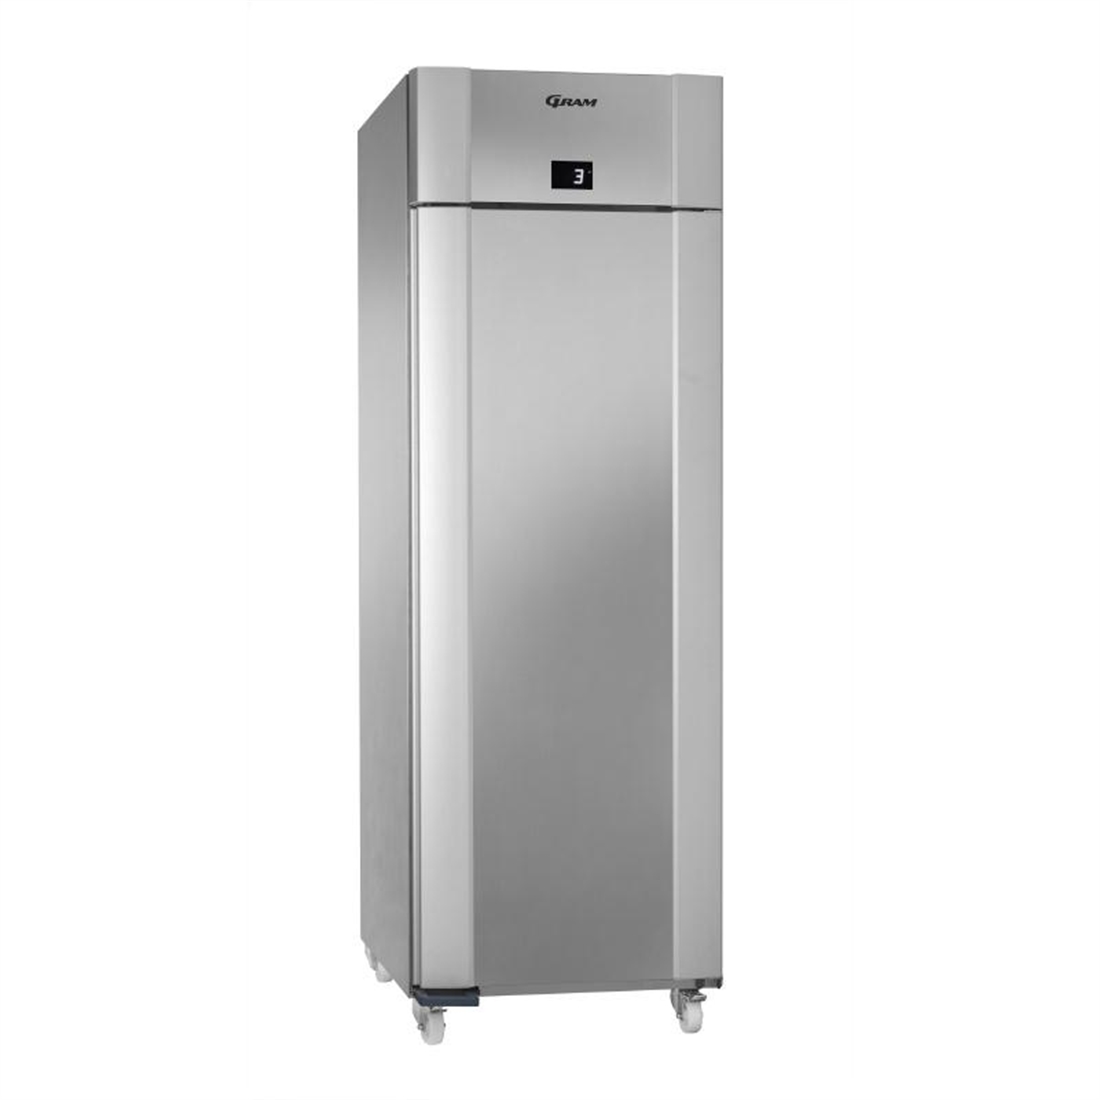 Gram Eco Plus 1 Door 610Ltr Freezer Stainless Steel F 70 CCG C1 4N